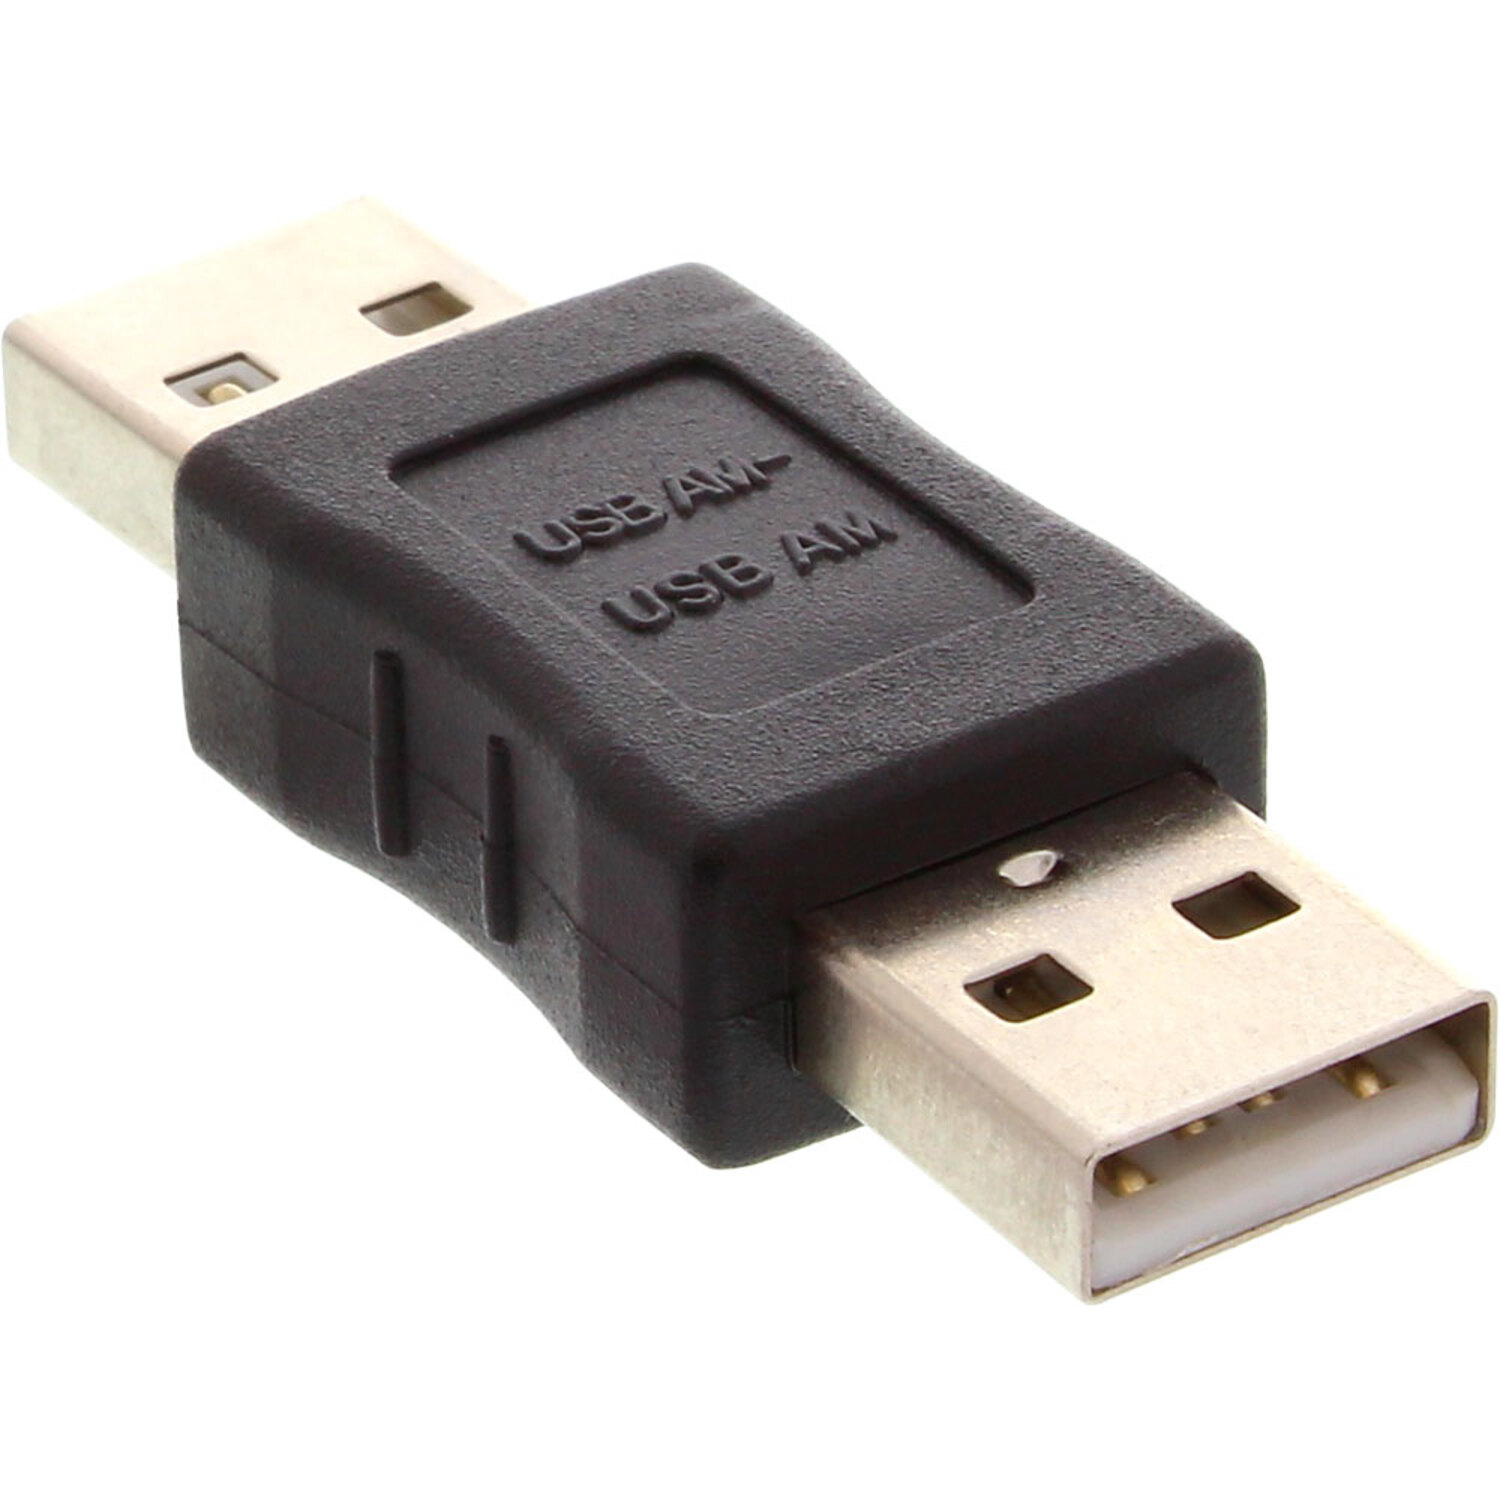 INLINE InLine® USB 2.0 Adapter, USB Adapter / 2.0 Stecker schwarz Adapter, A auf A USB 2.0 Konverter